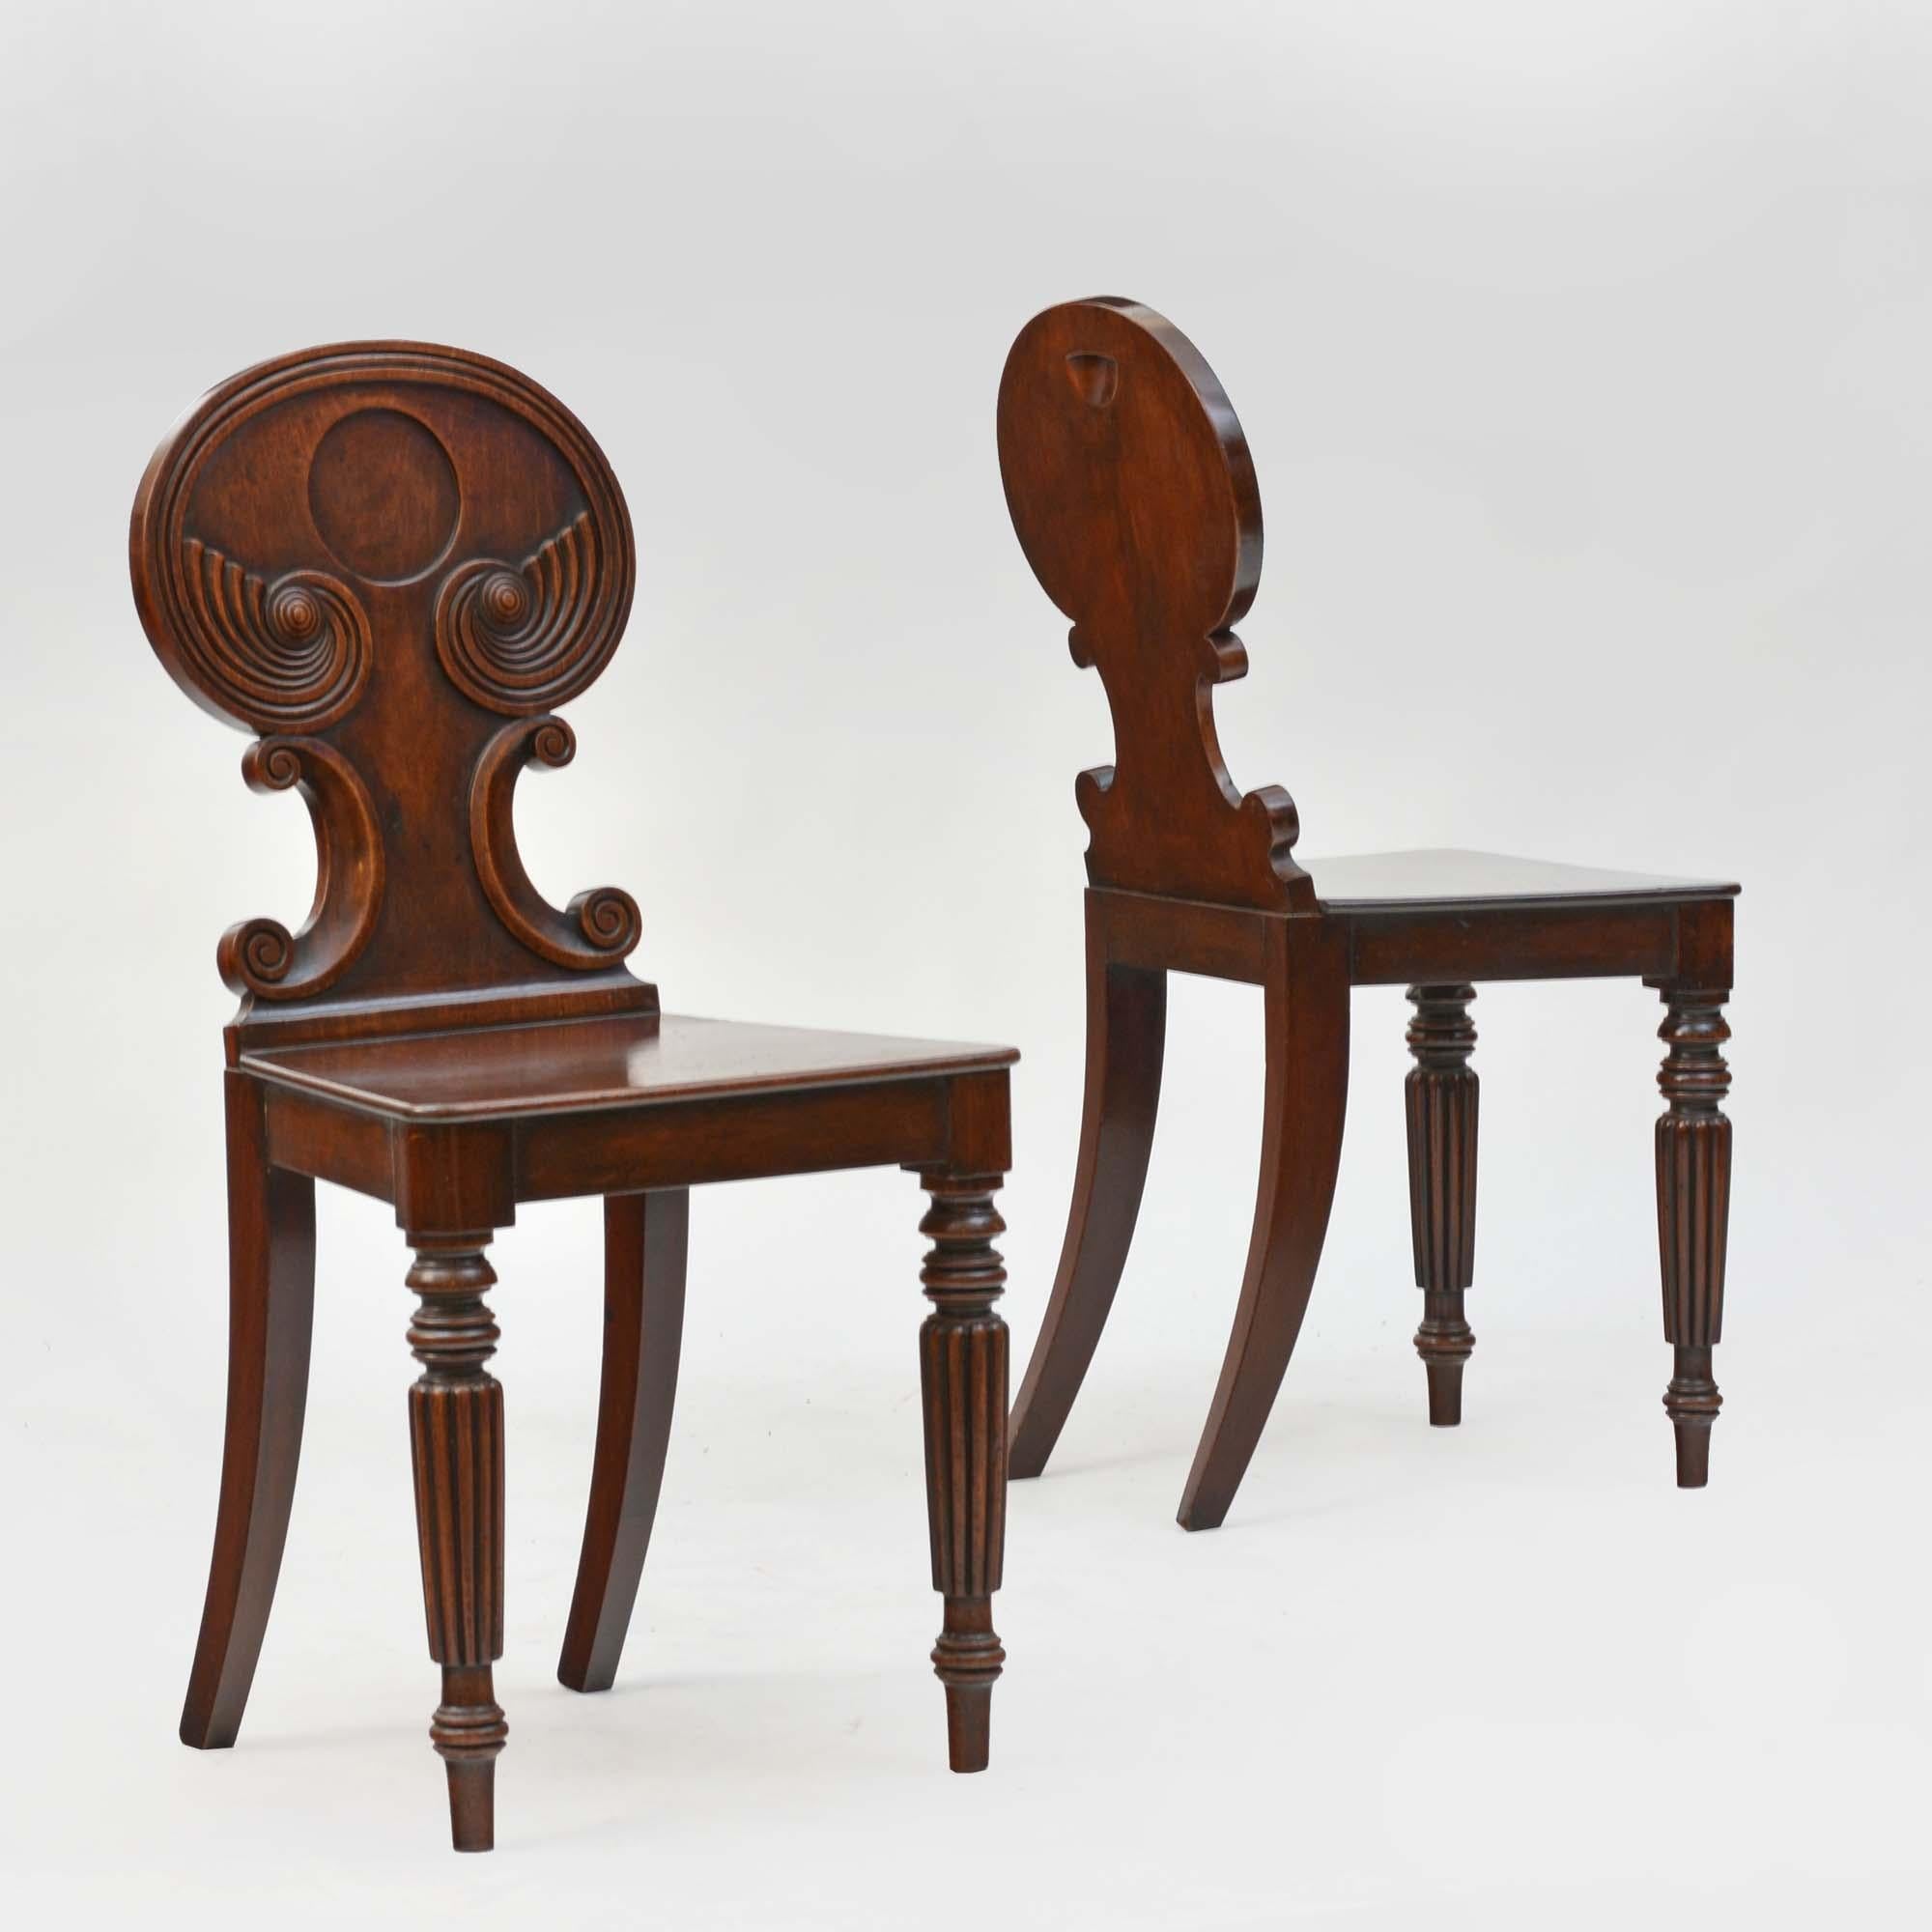 Paire de chaises d'entrée en acajou de style Régence, les dossiers ovales avec des sculptures en volutes à godrons se terminant par des paterae en forme de dôme et soutenus par une paire de volutes sculptées. Les sièges à planche effilée sont